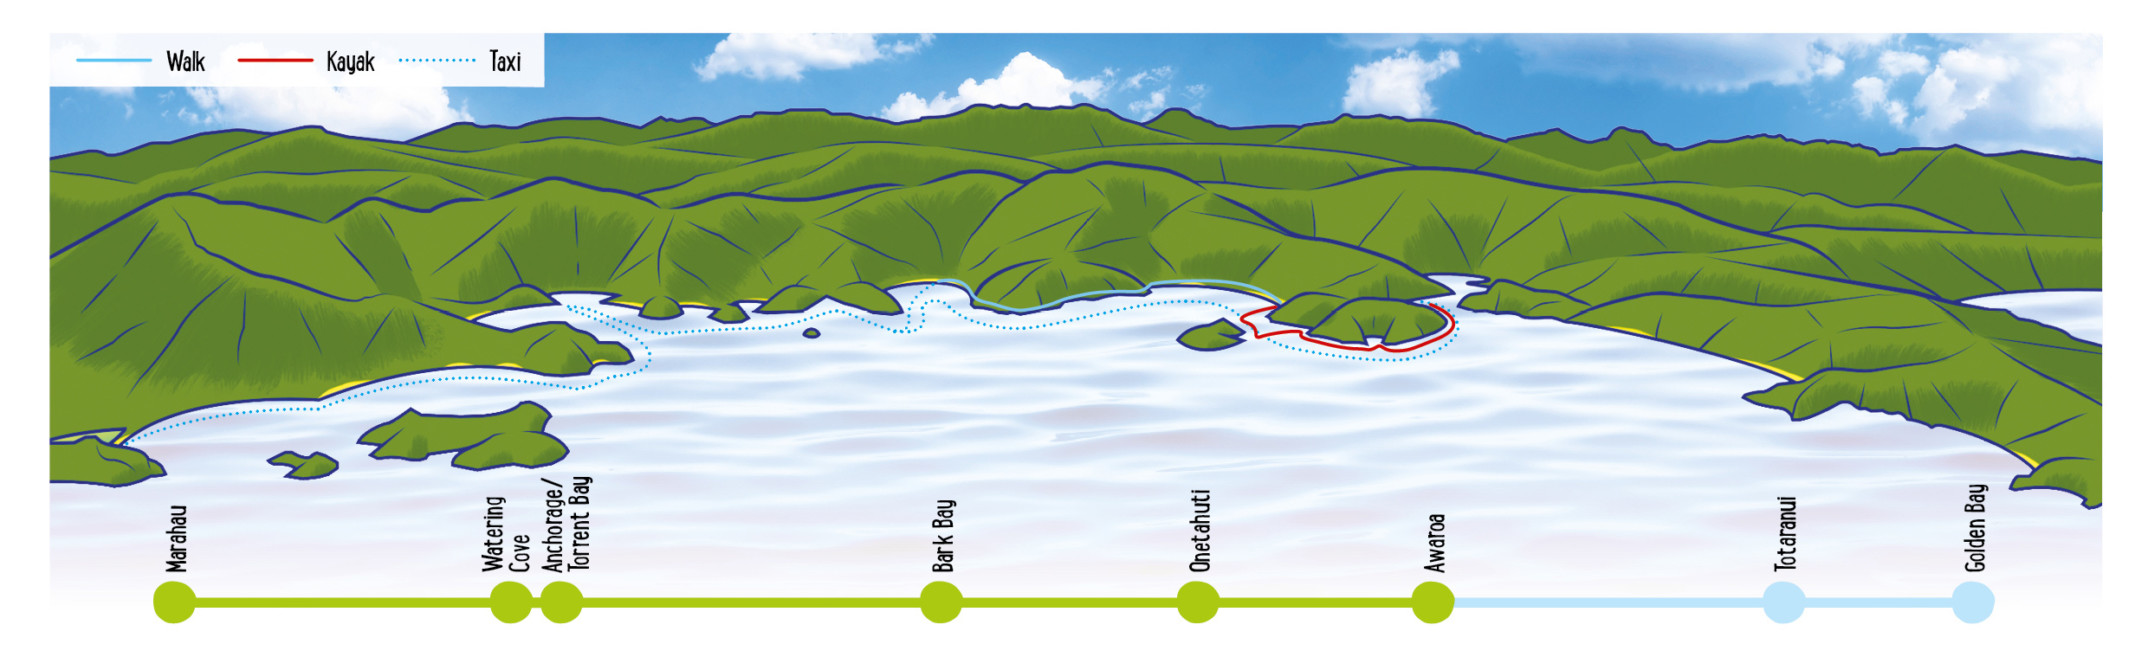 Two Gods Map - Abel Tasman Kayaks